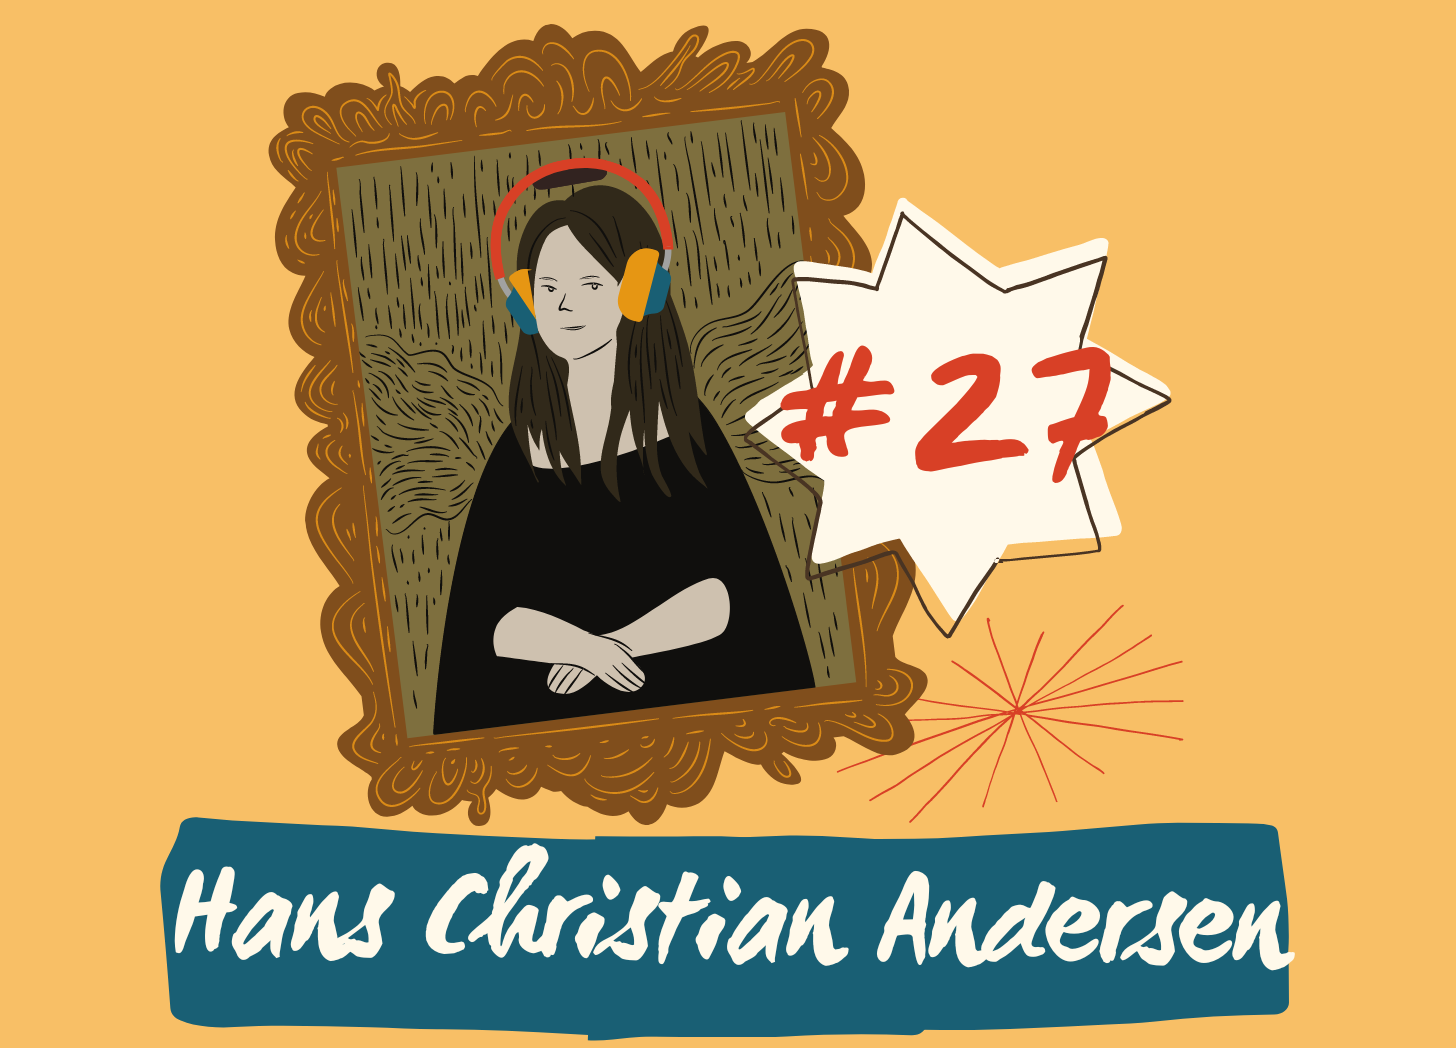 Episode 27 Hans Christian Andersen picture